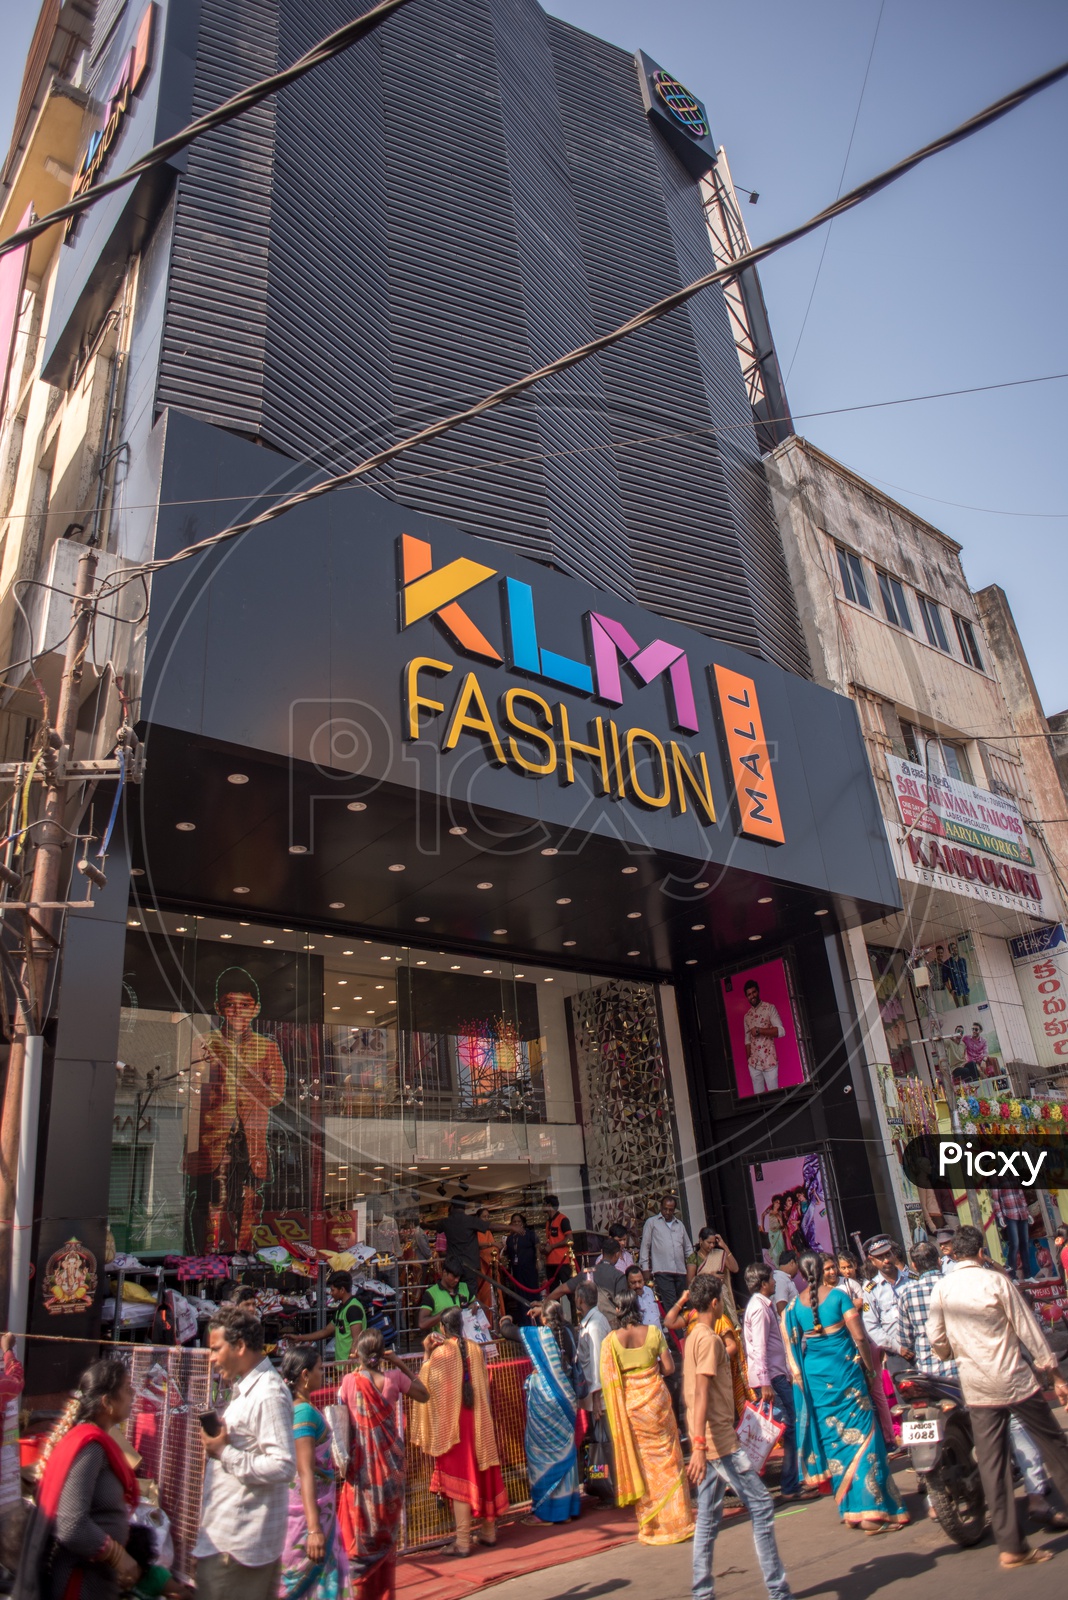 KLM Fashion Mall